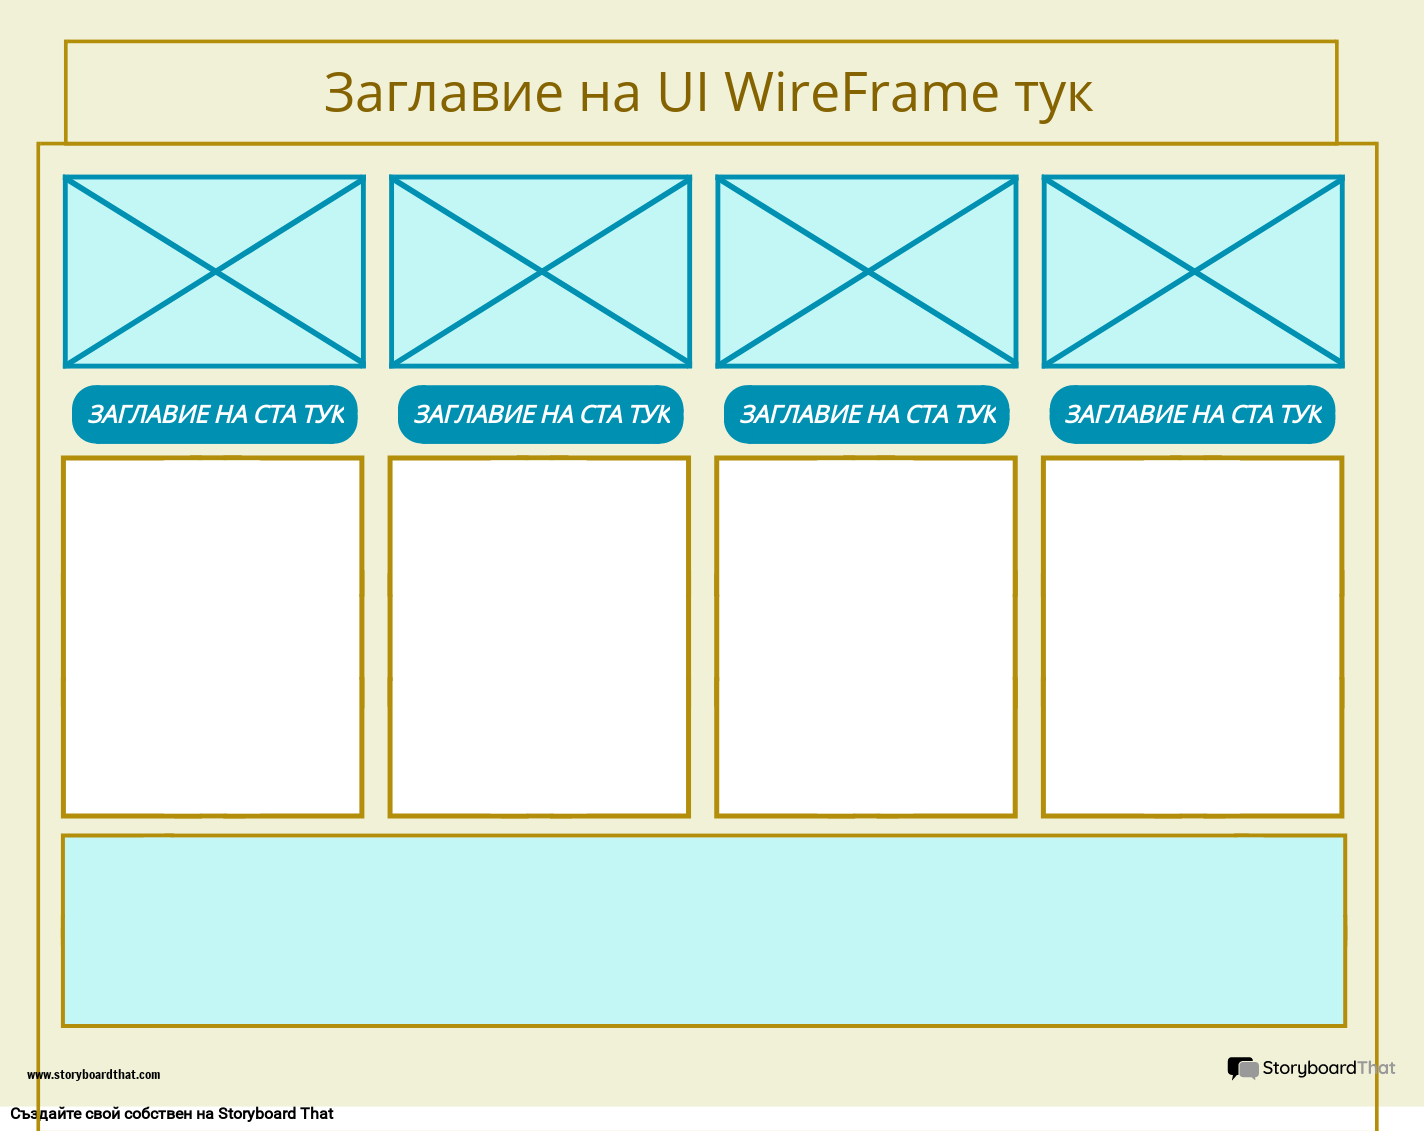 Корпоративен UI WireFrame Шаблон 4